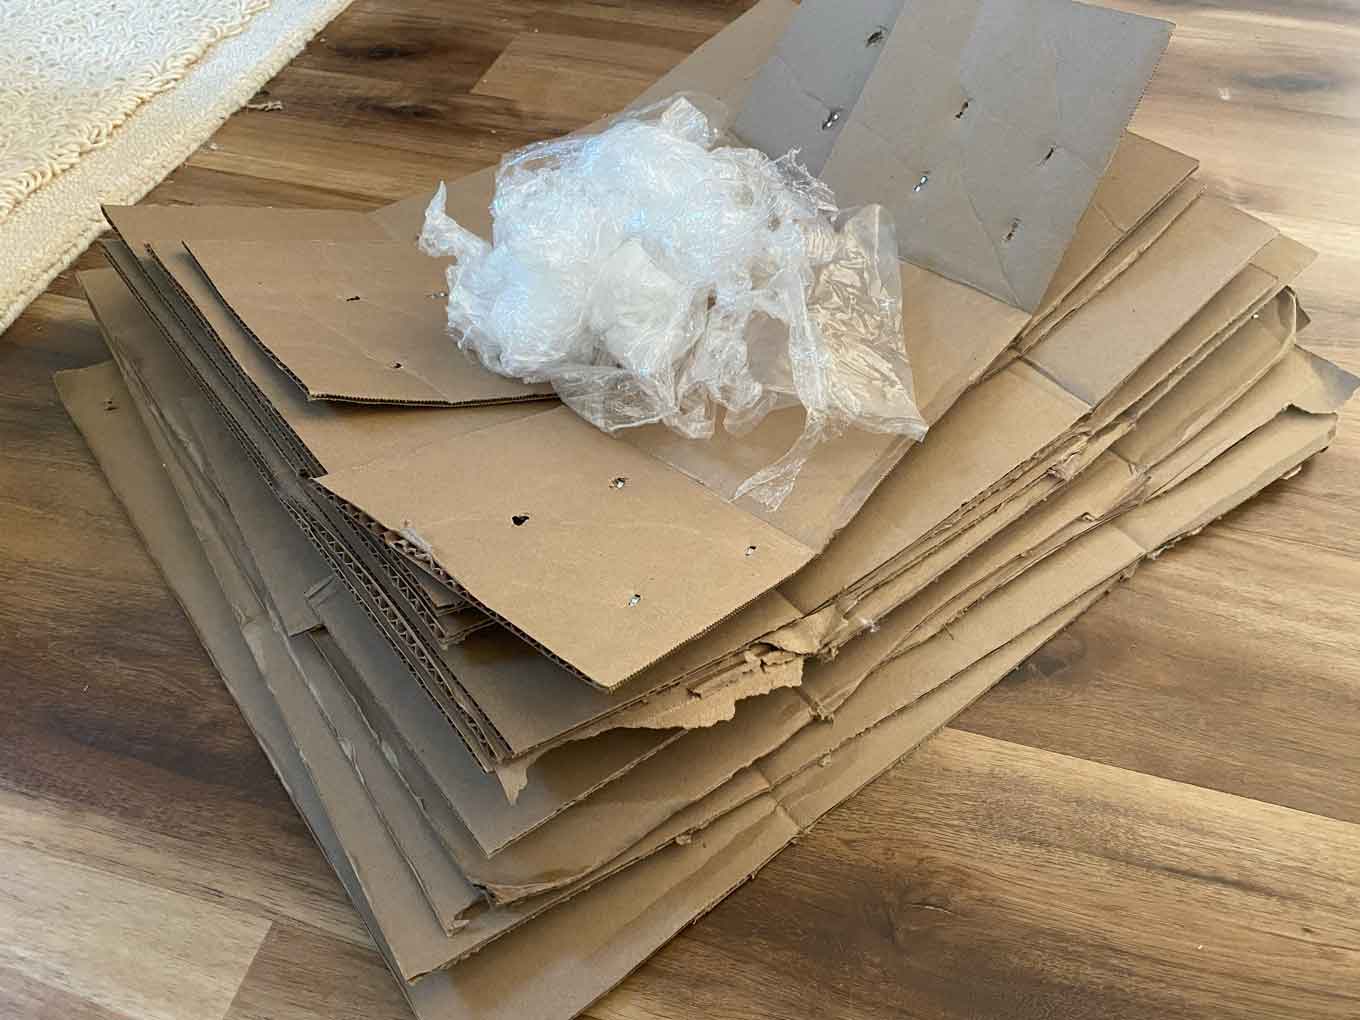 Een stapel kartonnen verpakkingen met een kleine hoeveelheid plastic